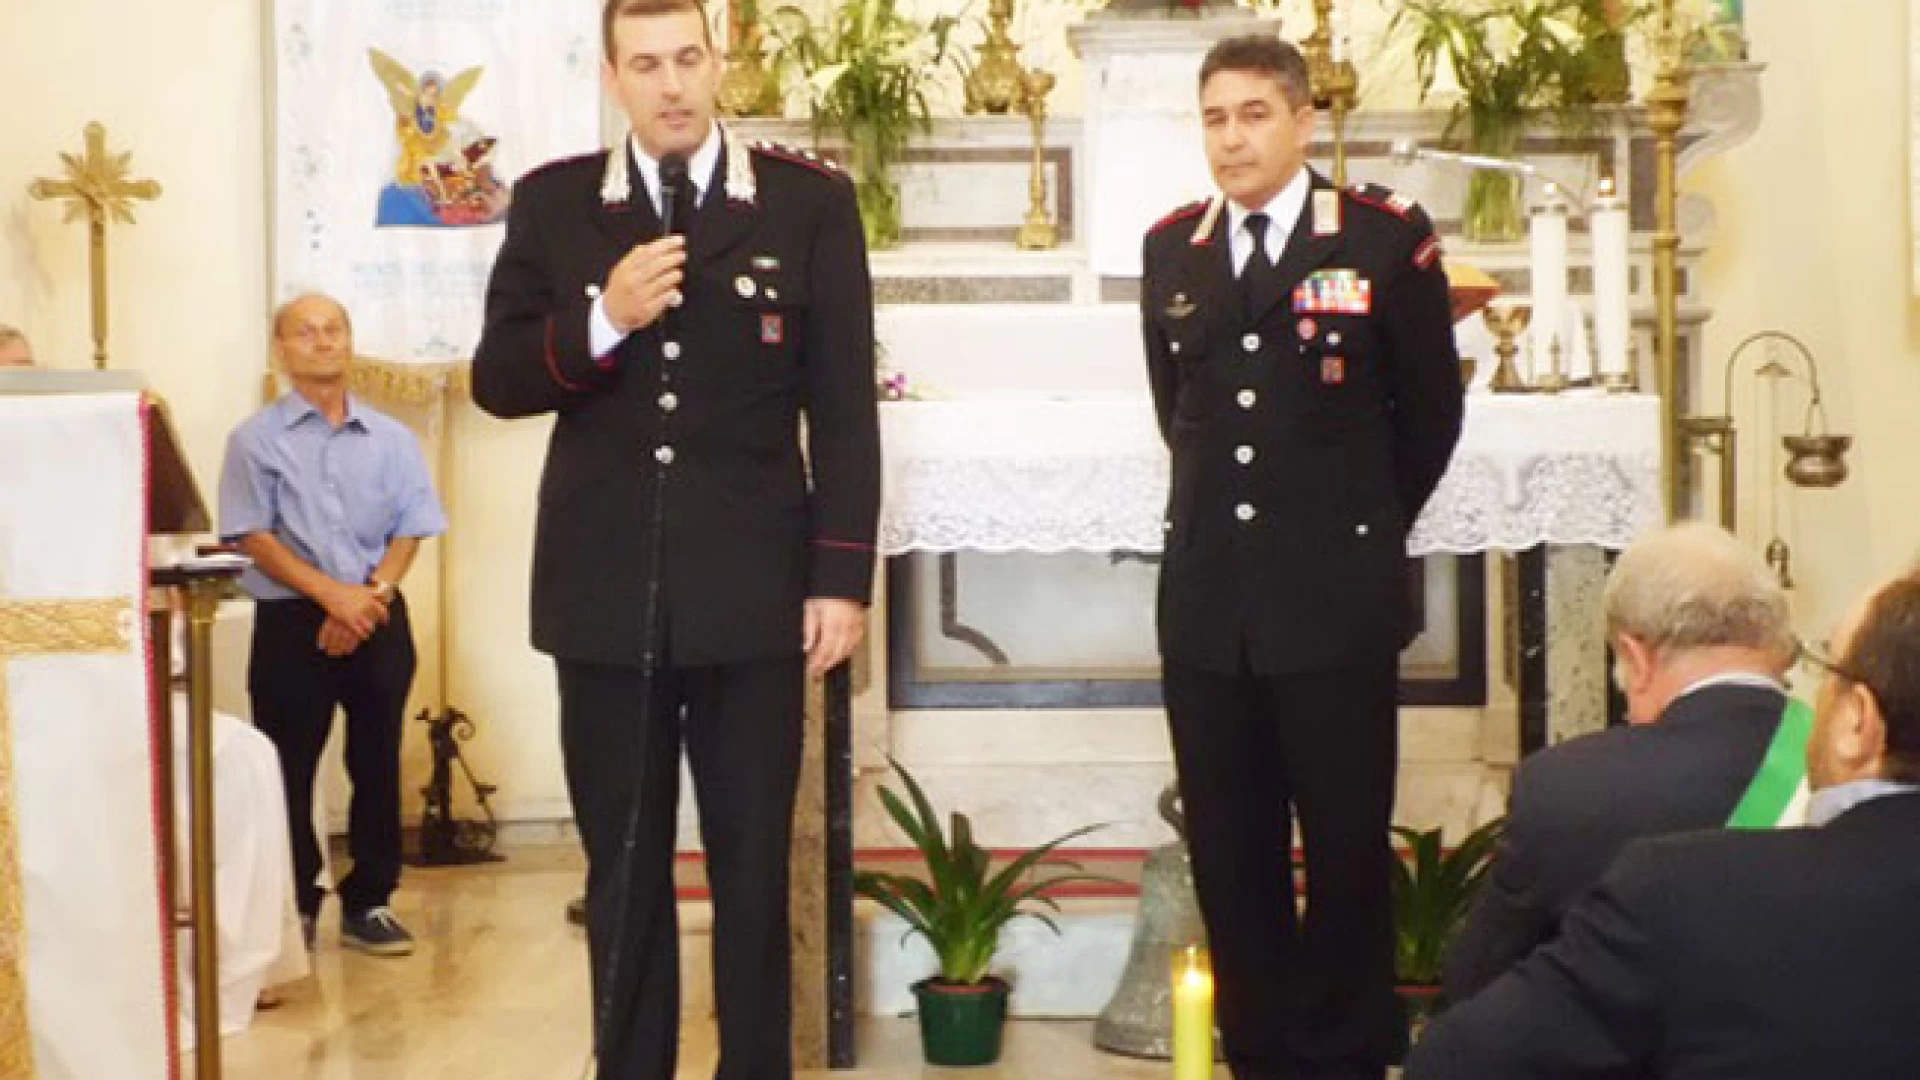 Roccaravindola: continuano gli incontri dei Carabinieri nelle parrocchie con i fedeli per metterli in guardia contro il pericolo delle truffe.